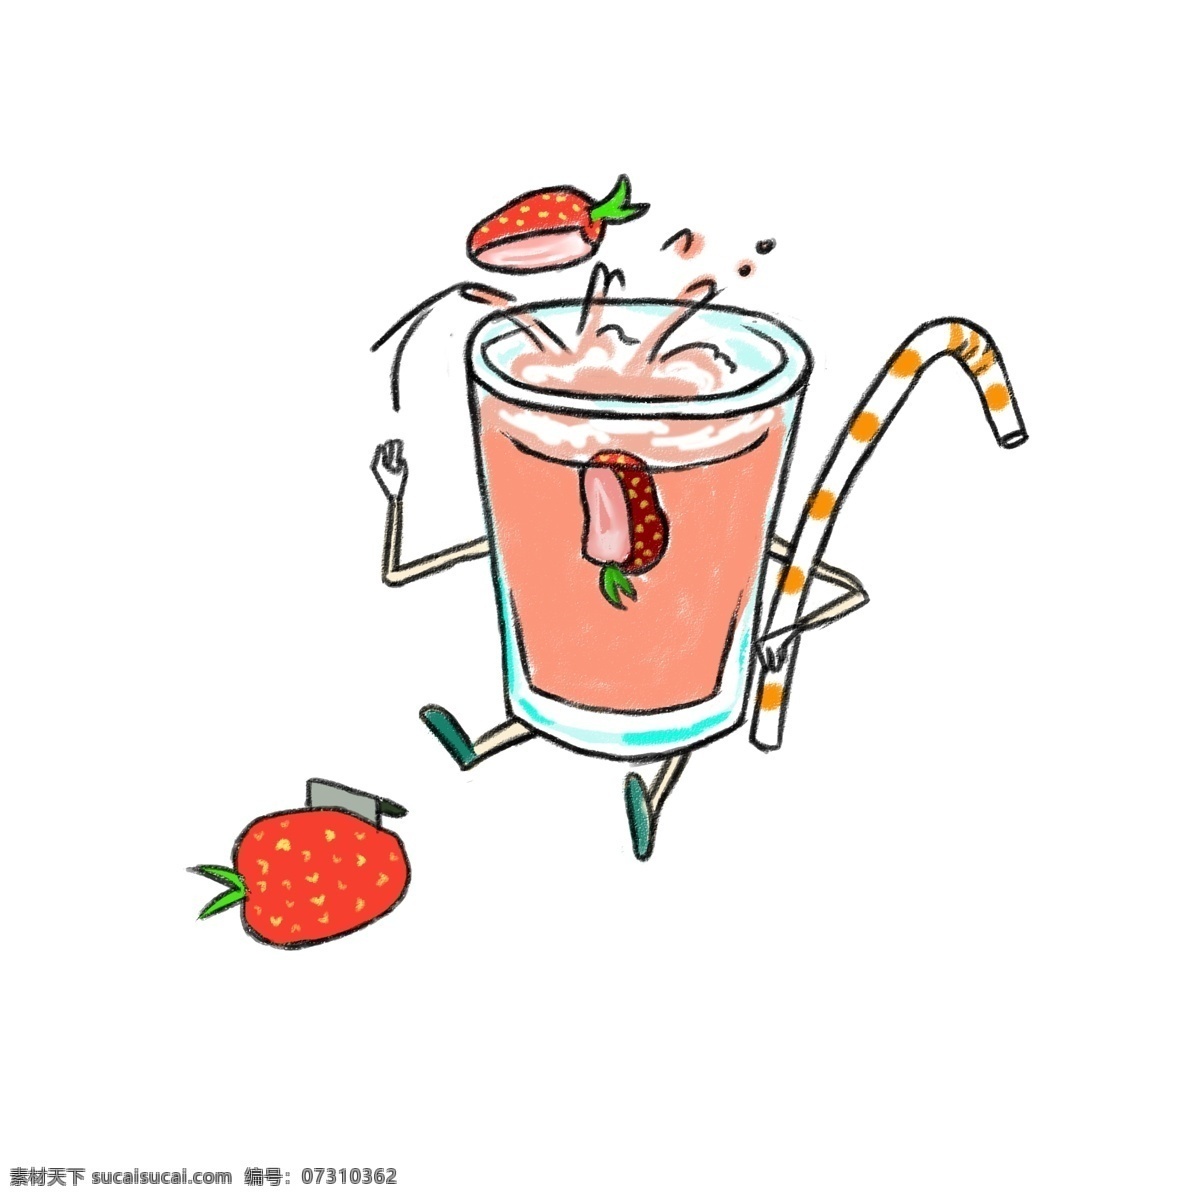 草莓果汁 夏日 凉爽 简洁 卡通 可爱 美食